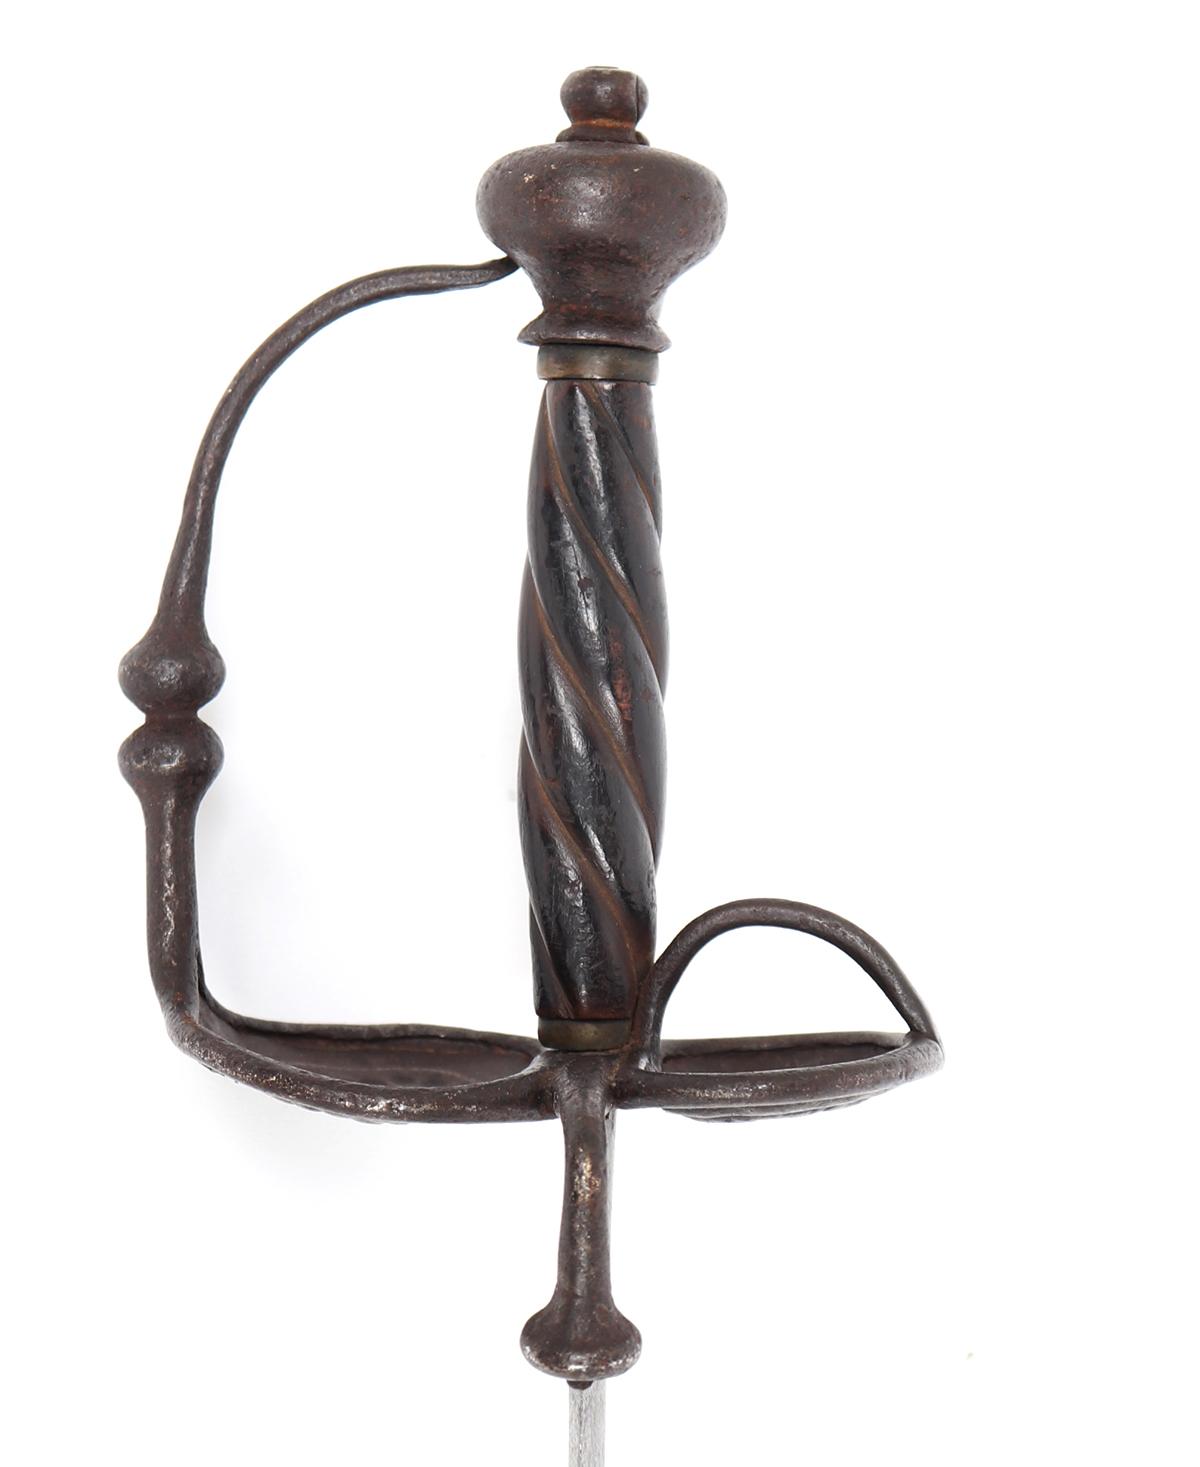 German Broad/Hanger Sword, 17th century